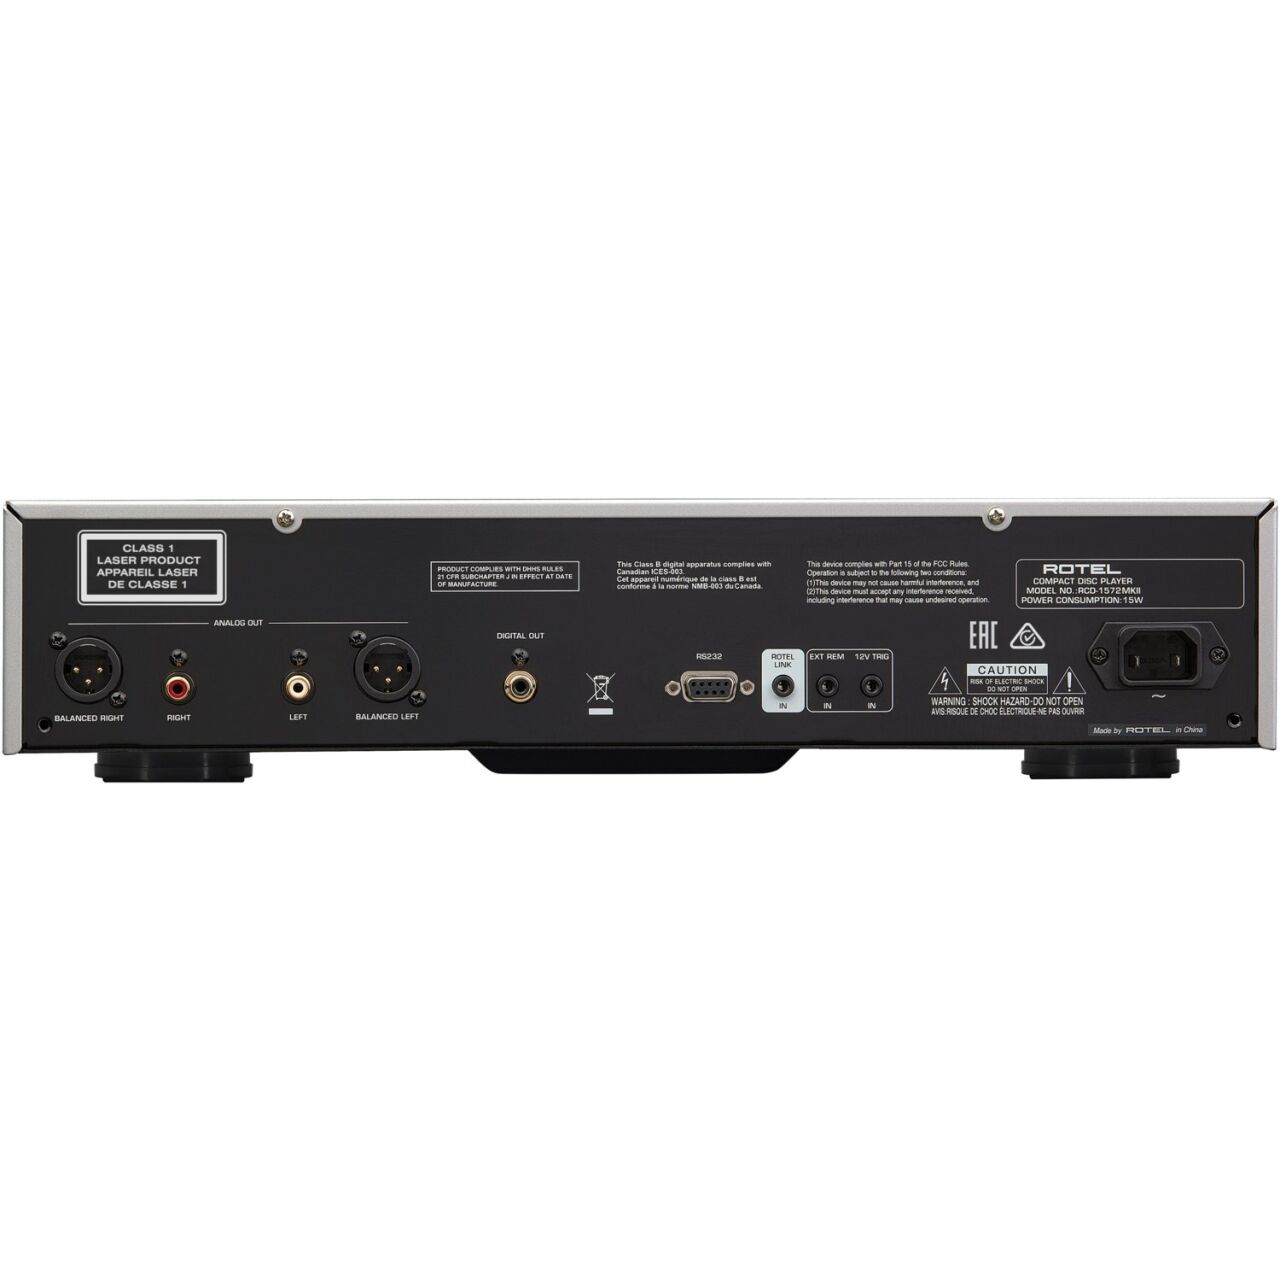 Rotel RCD-1572 MK II CD-Player